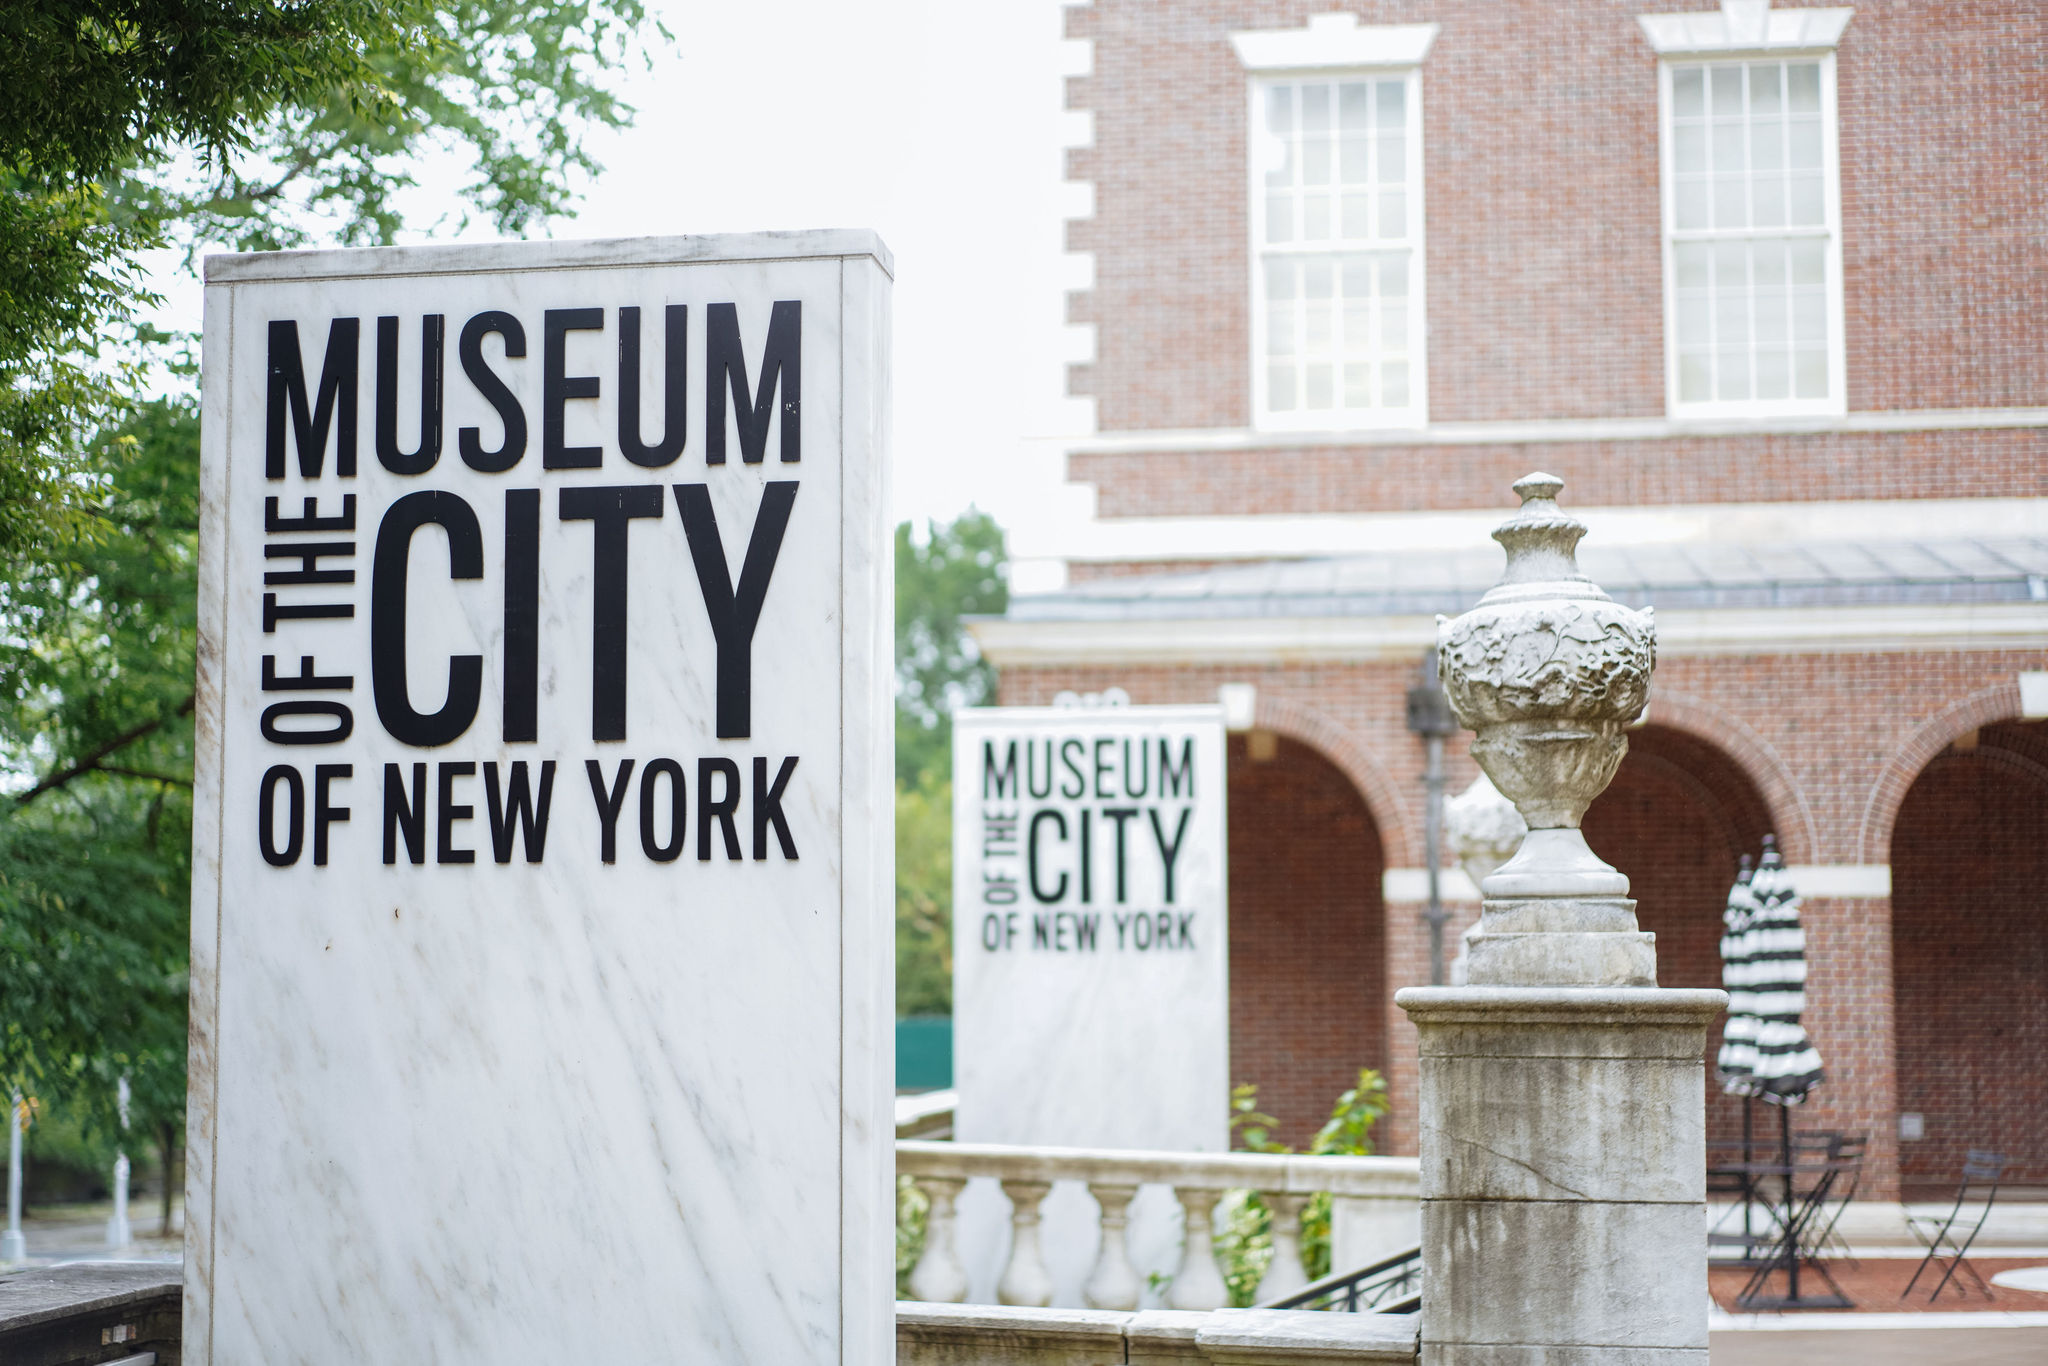 北角に面したテラスから美術館正面を望む。 前景にはニューヨーク市立博物館のロゴが入った大理石の看板があります。